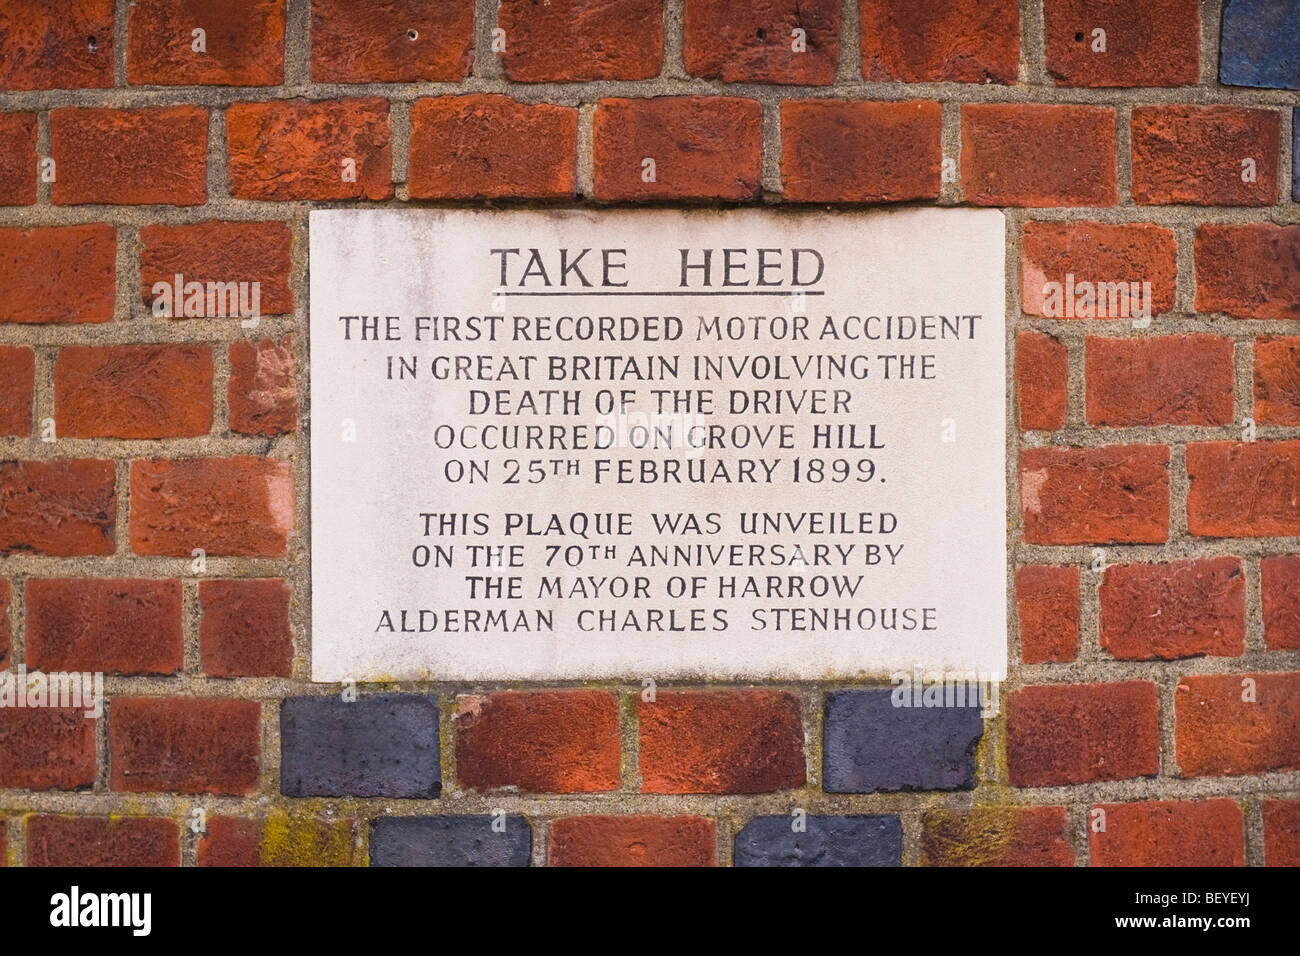 Harrow on the Hill , en plaque commémorant la paroi à moteur premier accident impliquant la mort de pilote sur Grove Hill 25.02.1899 Banque D'Images